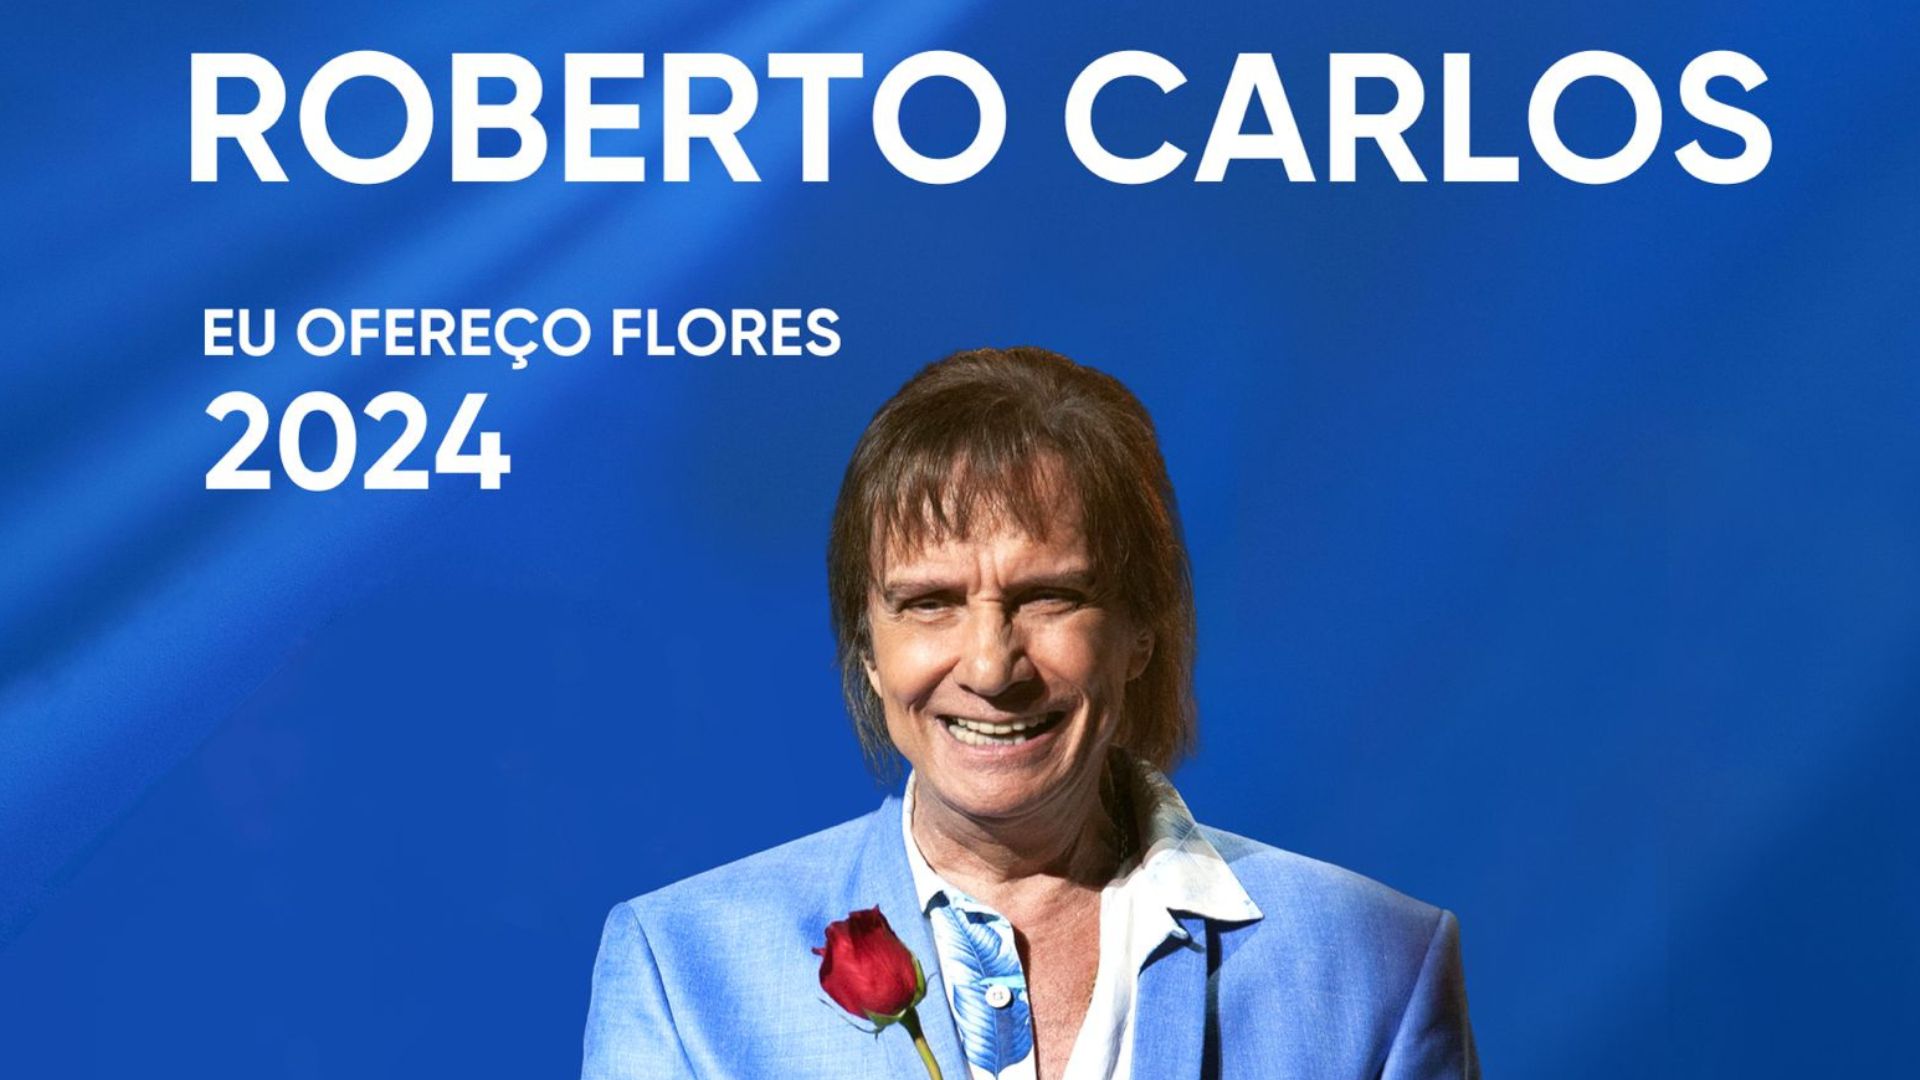 Roberto Carlos - Eu Ofereço Flores 2024